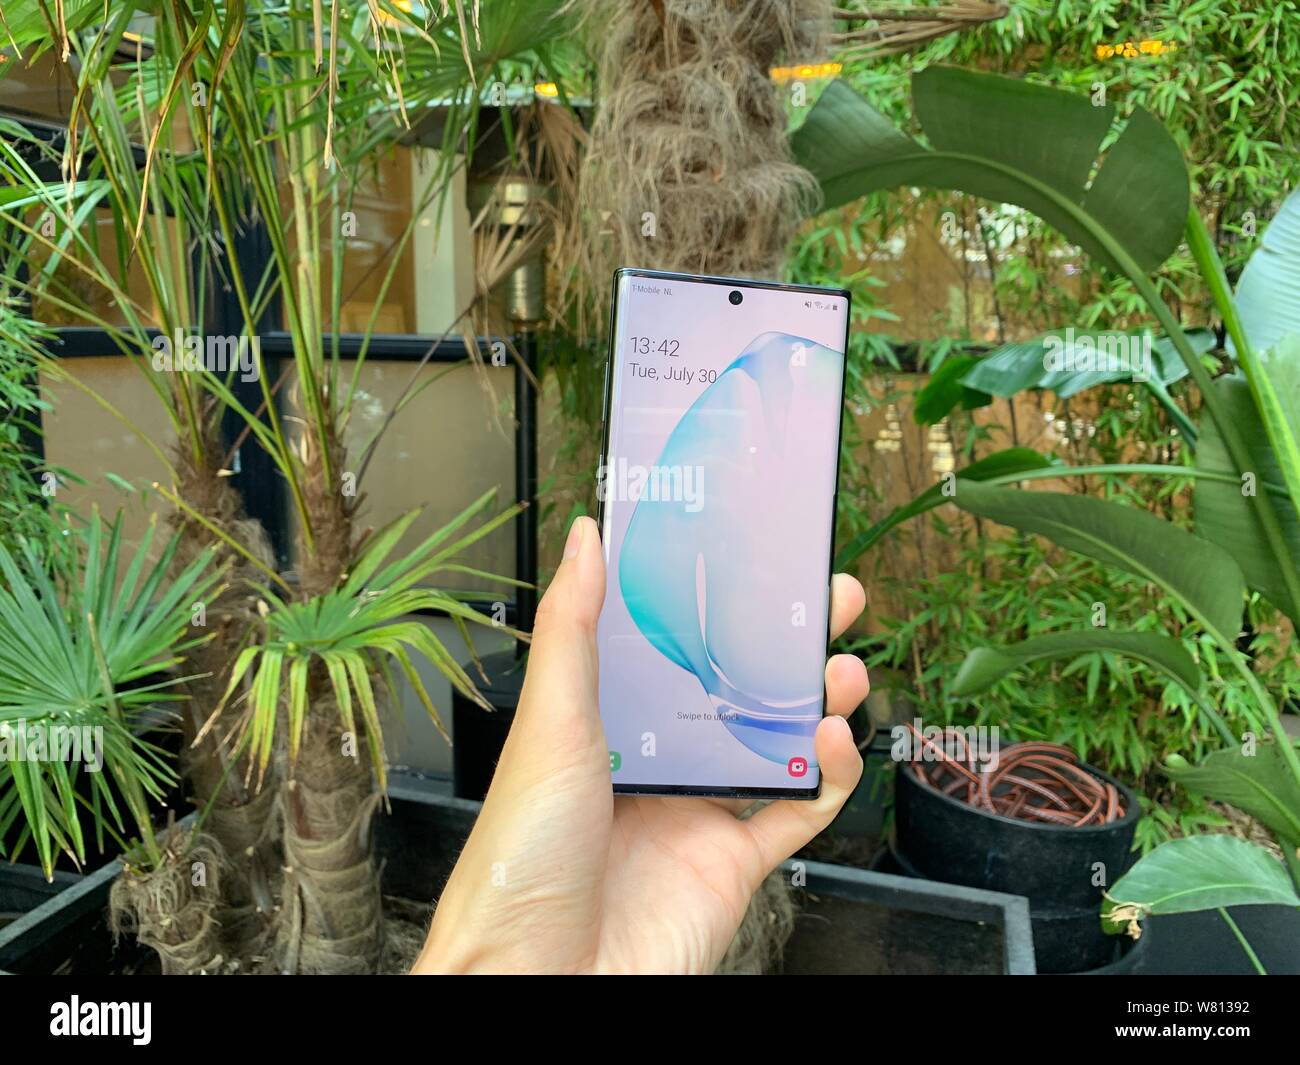 Der Samsung Anmerkung 10 + Smartphone, die zusammen mit der Anmerkung 10 Bei einer live Samsung Ereignis in New York am Mittwoch Abend vorgestellt wurde. Stockfoto